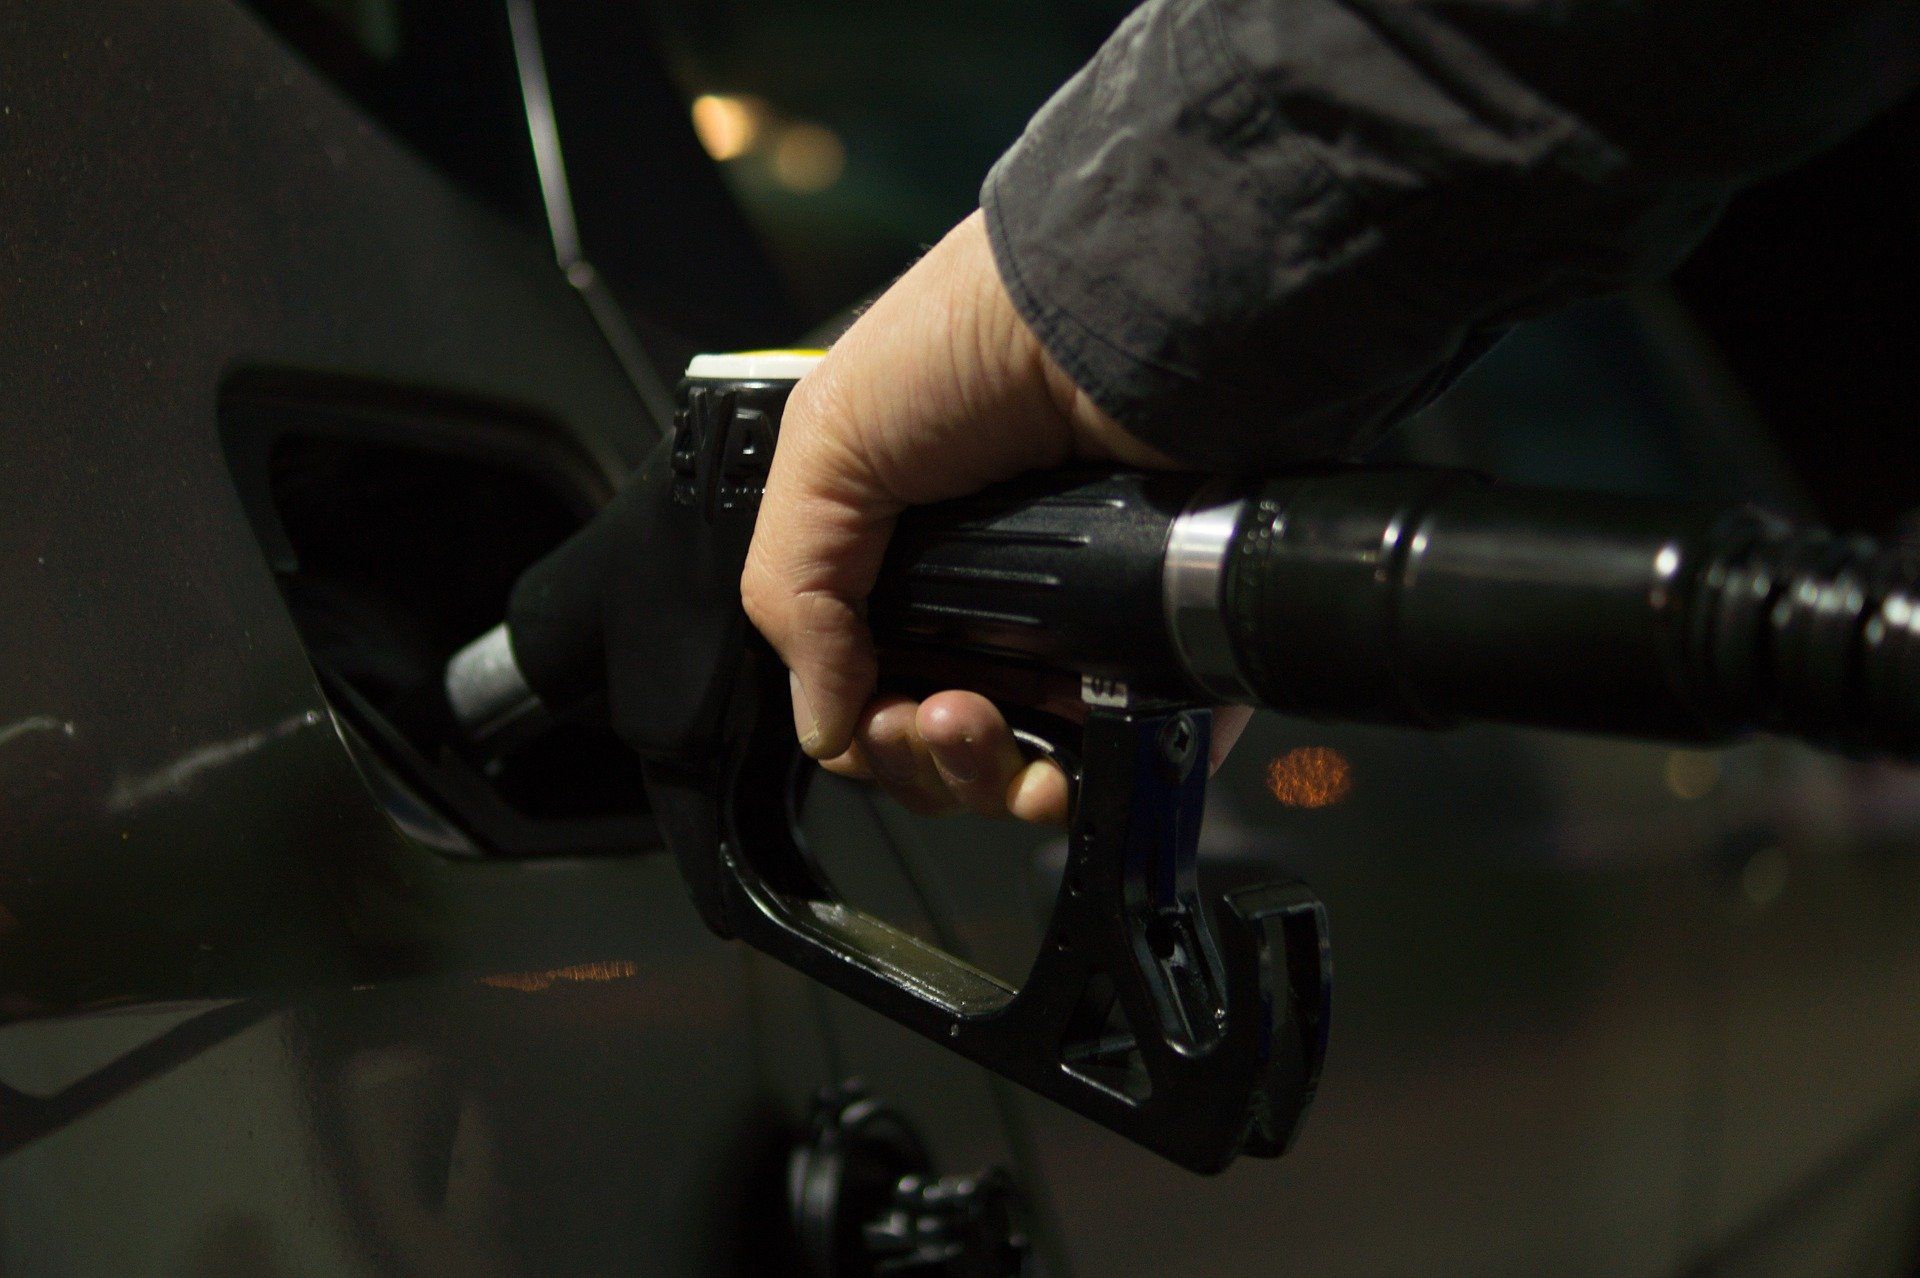 Fuel price August 2, 2022: Petrol Rs 106.31, diesel Rs 94.27 in Mumbai